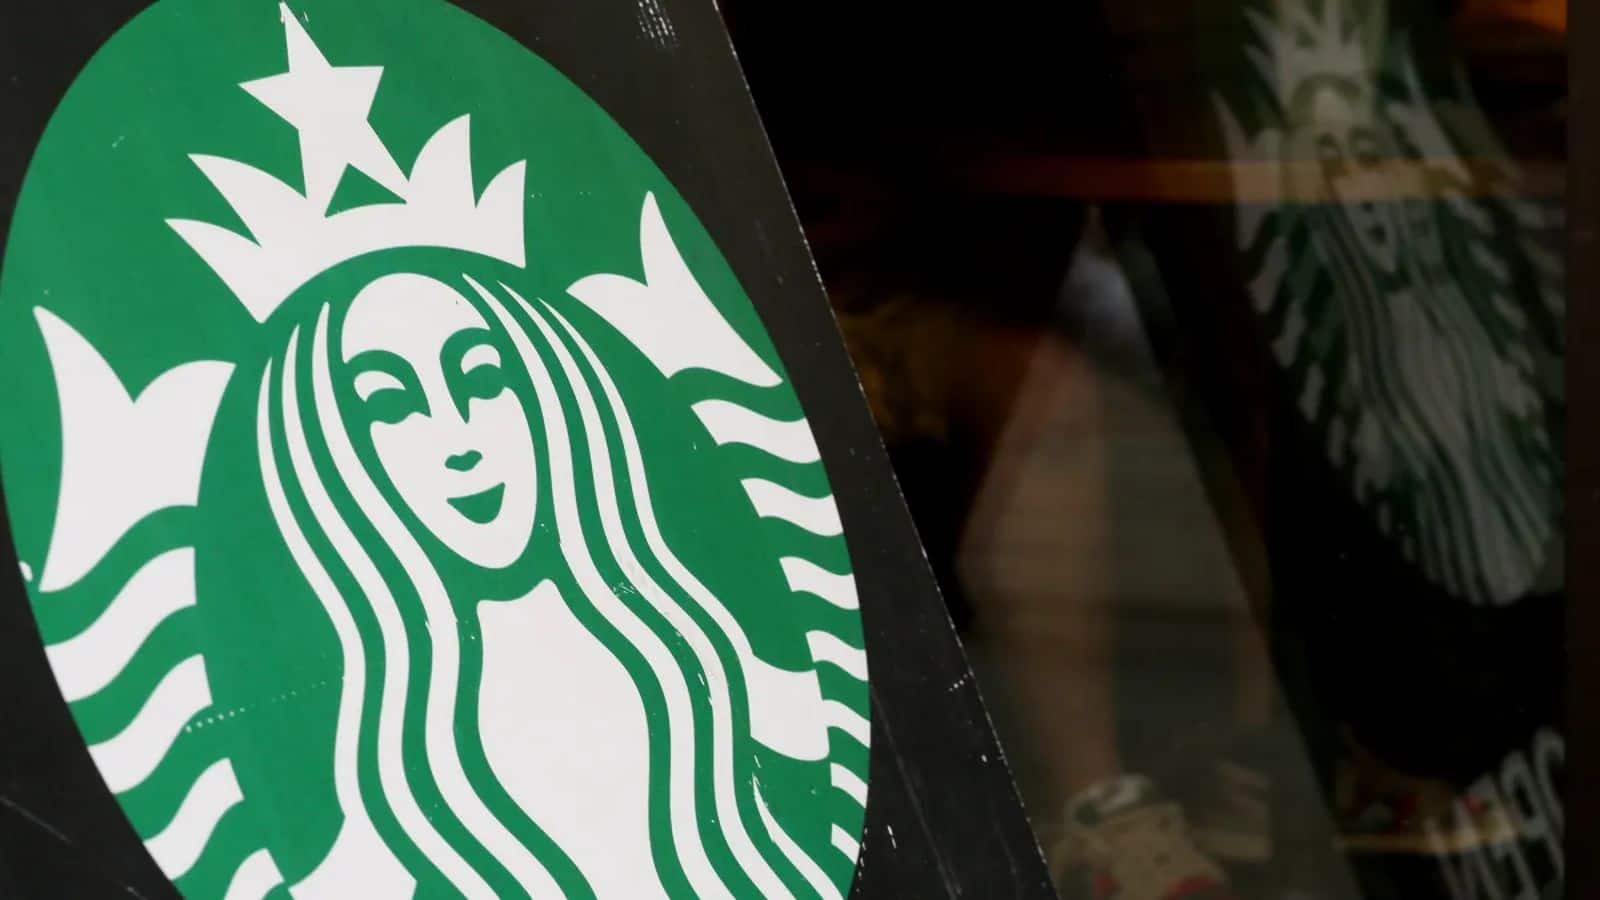 Starbucks abandons Odyssey NFT program, cites readiness for future evolution